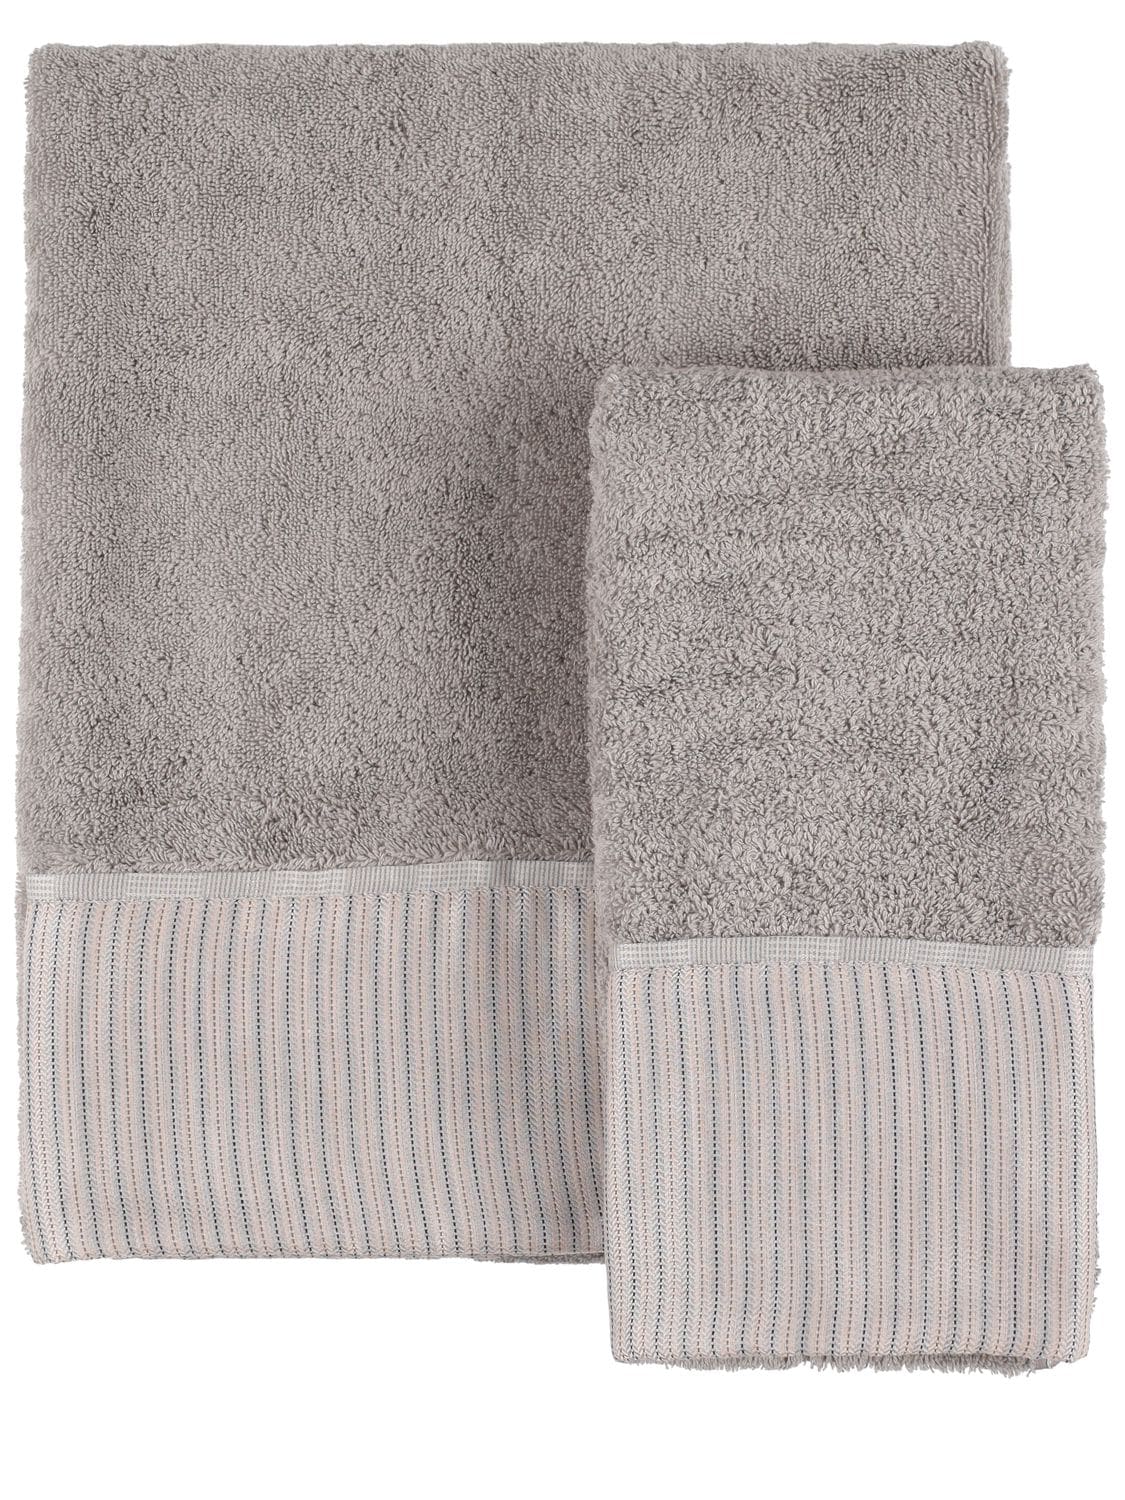 Armani/casa Petty Set Of 2 Cotton Towels In Perla